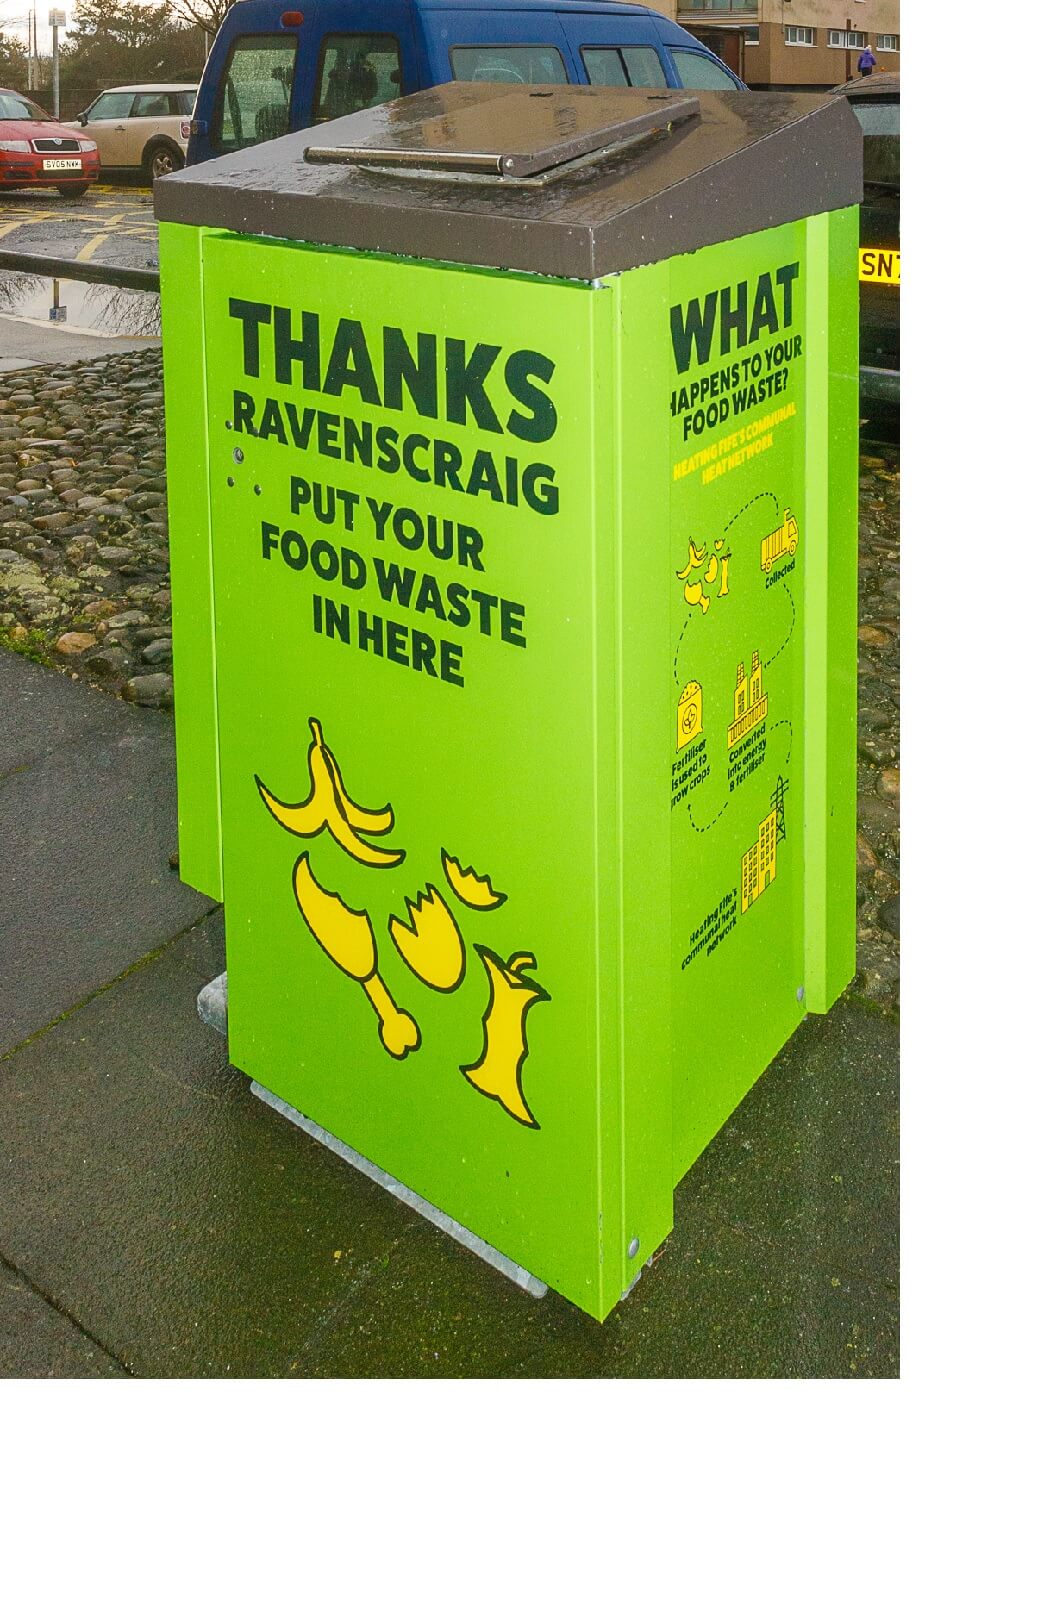 A food waste bin at Ravenscraig